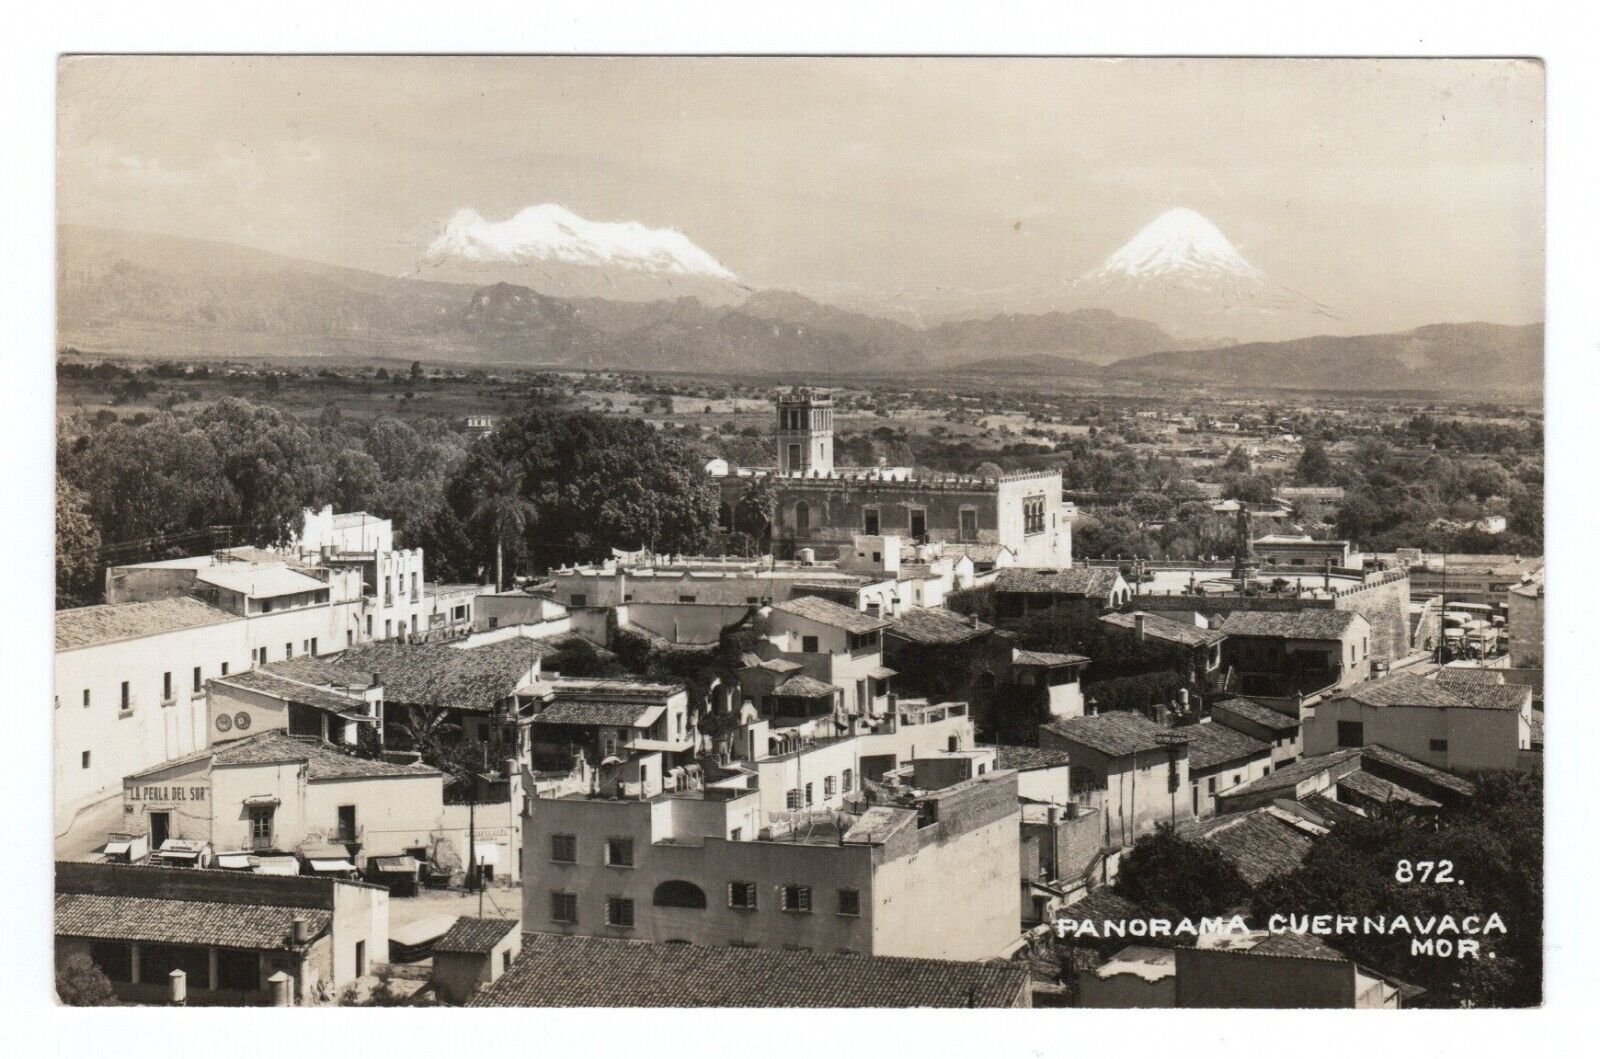 Panorama Cuernavaca Morelos Mexico RPPC Real Photo Postcard Vintage Unposted